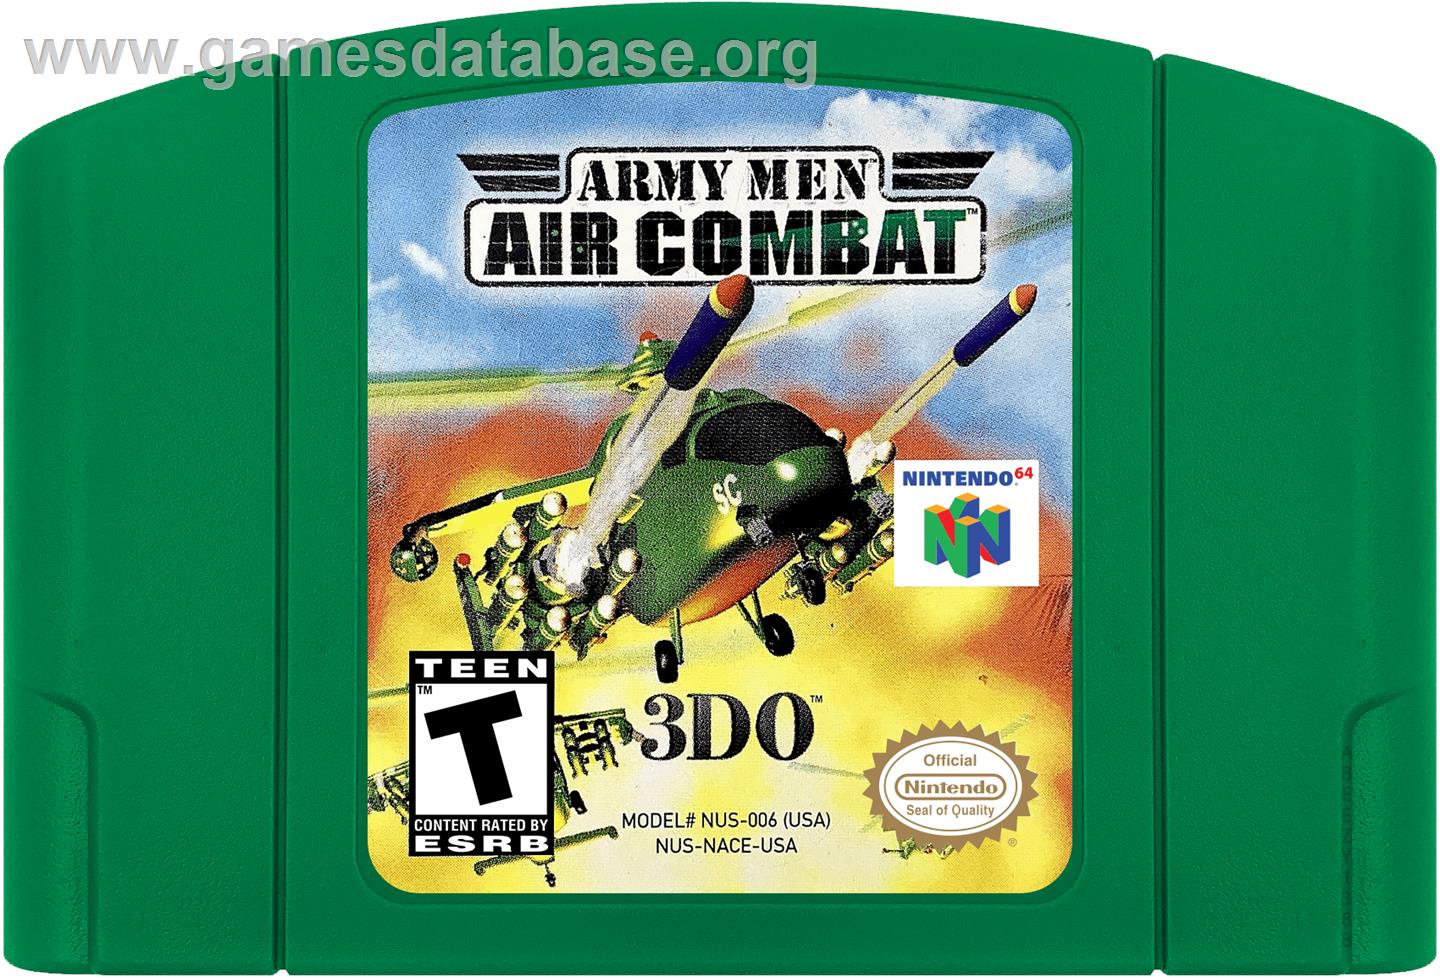 Army Men: Air Combat - Nintendo N64 - Artwork - Cartridge